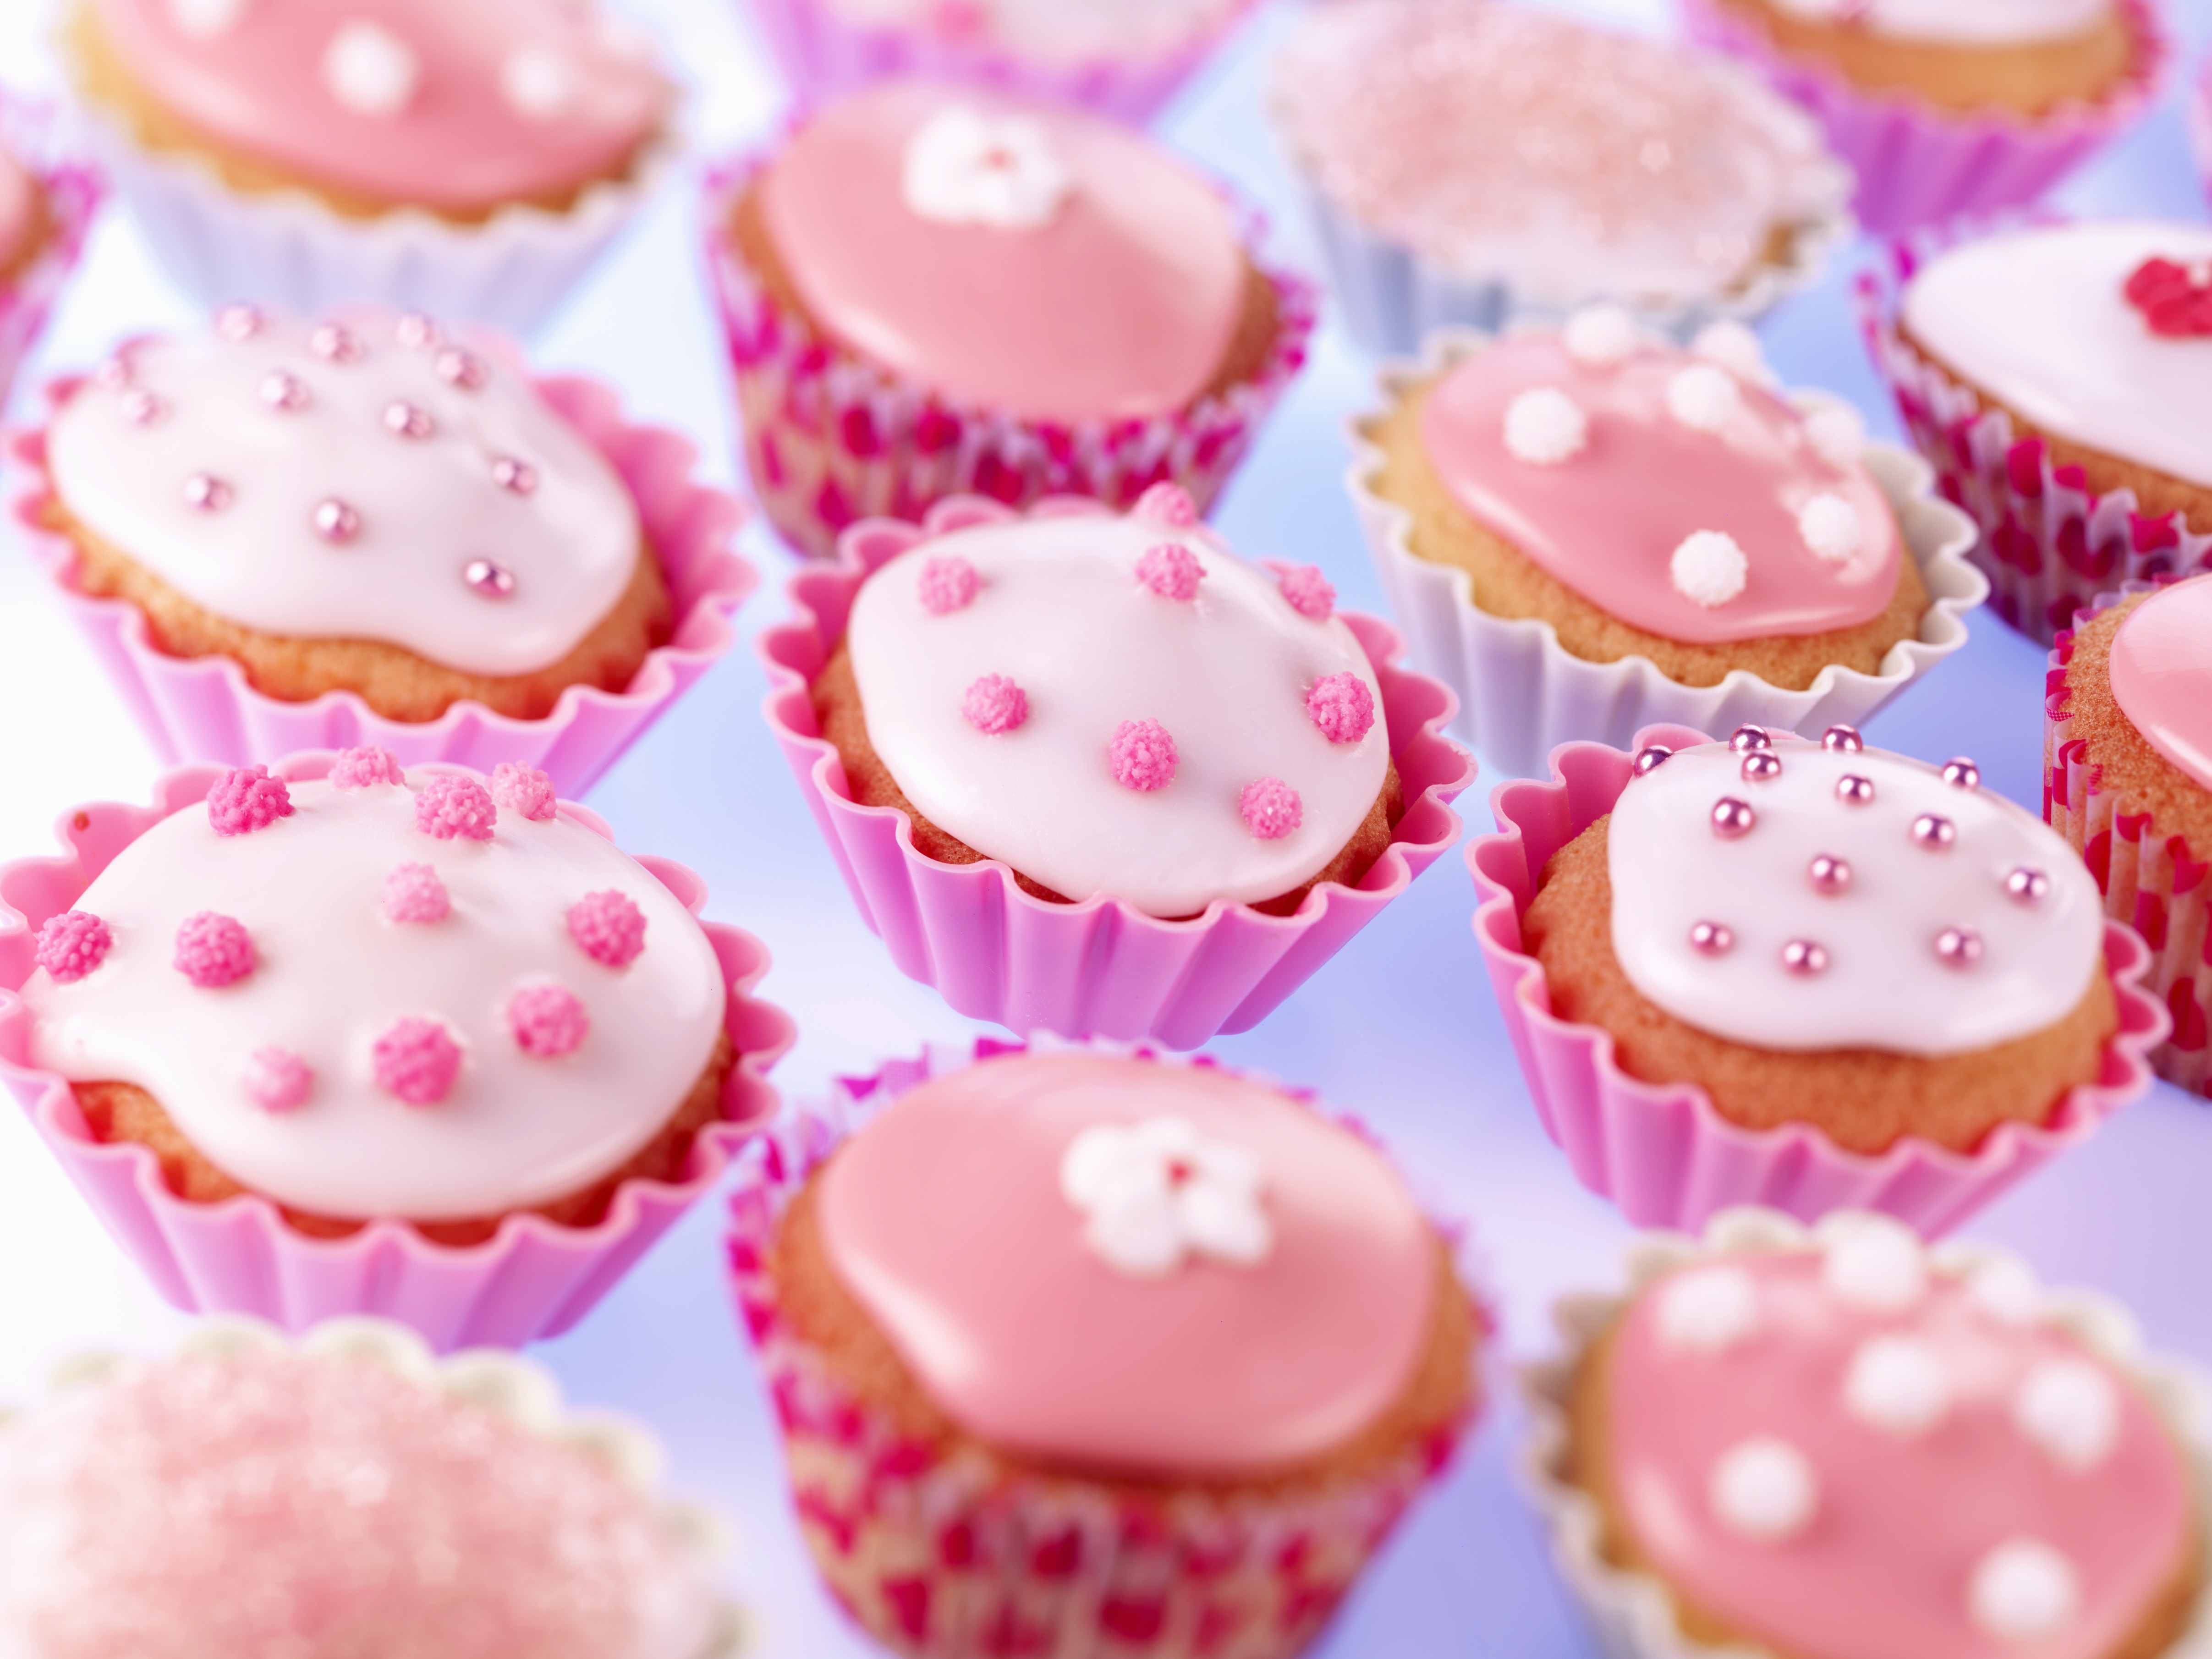 Cupcakes décorés avec glaçage au sucre